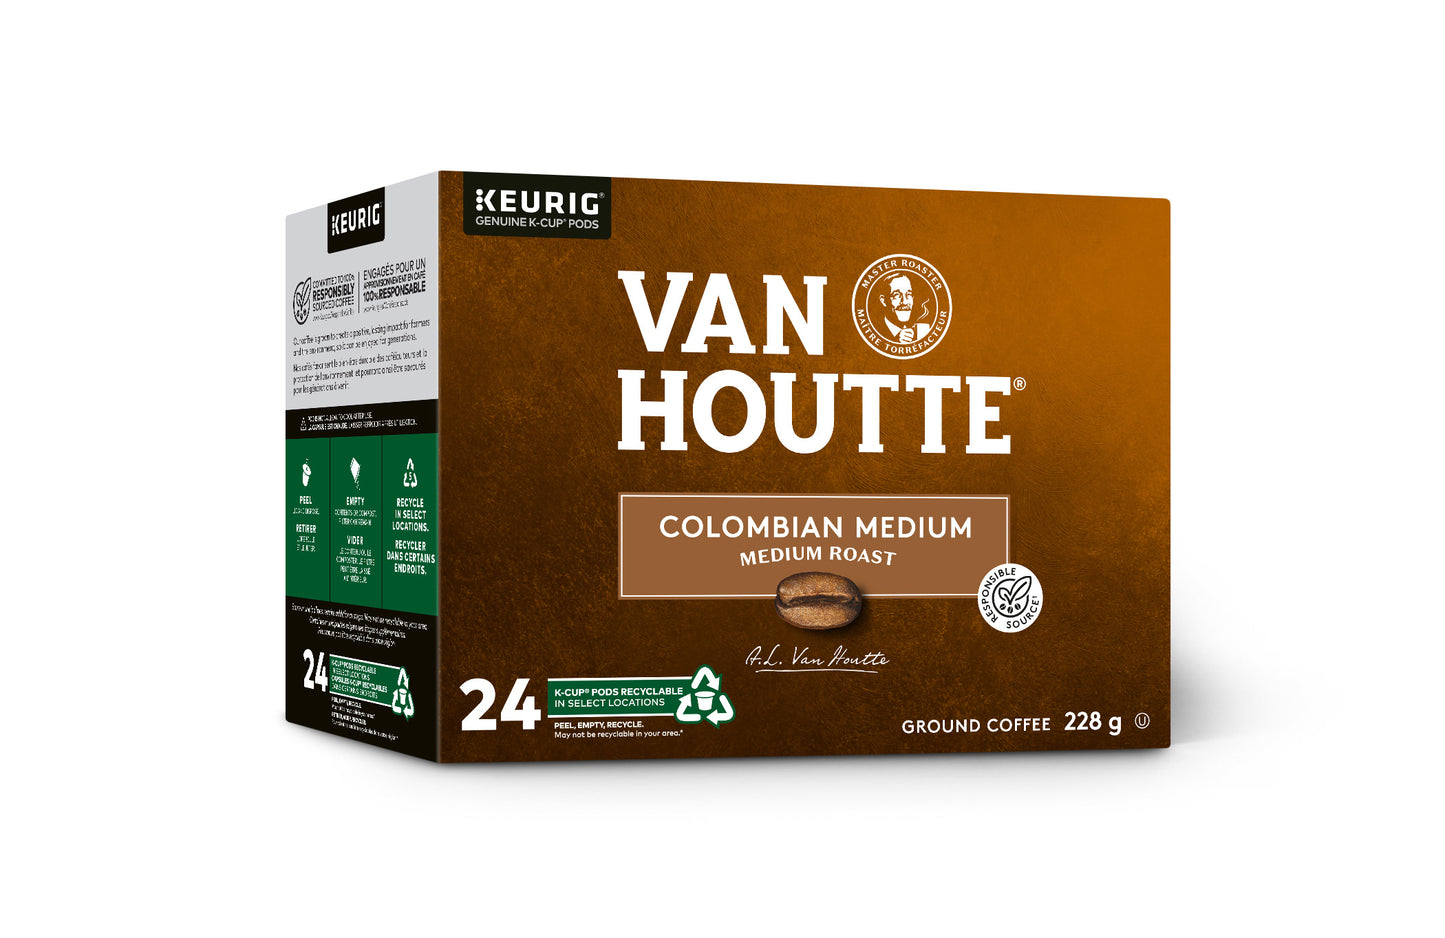 Van Houtte® Colombian Medium Coffee [24 pack]